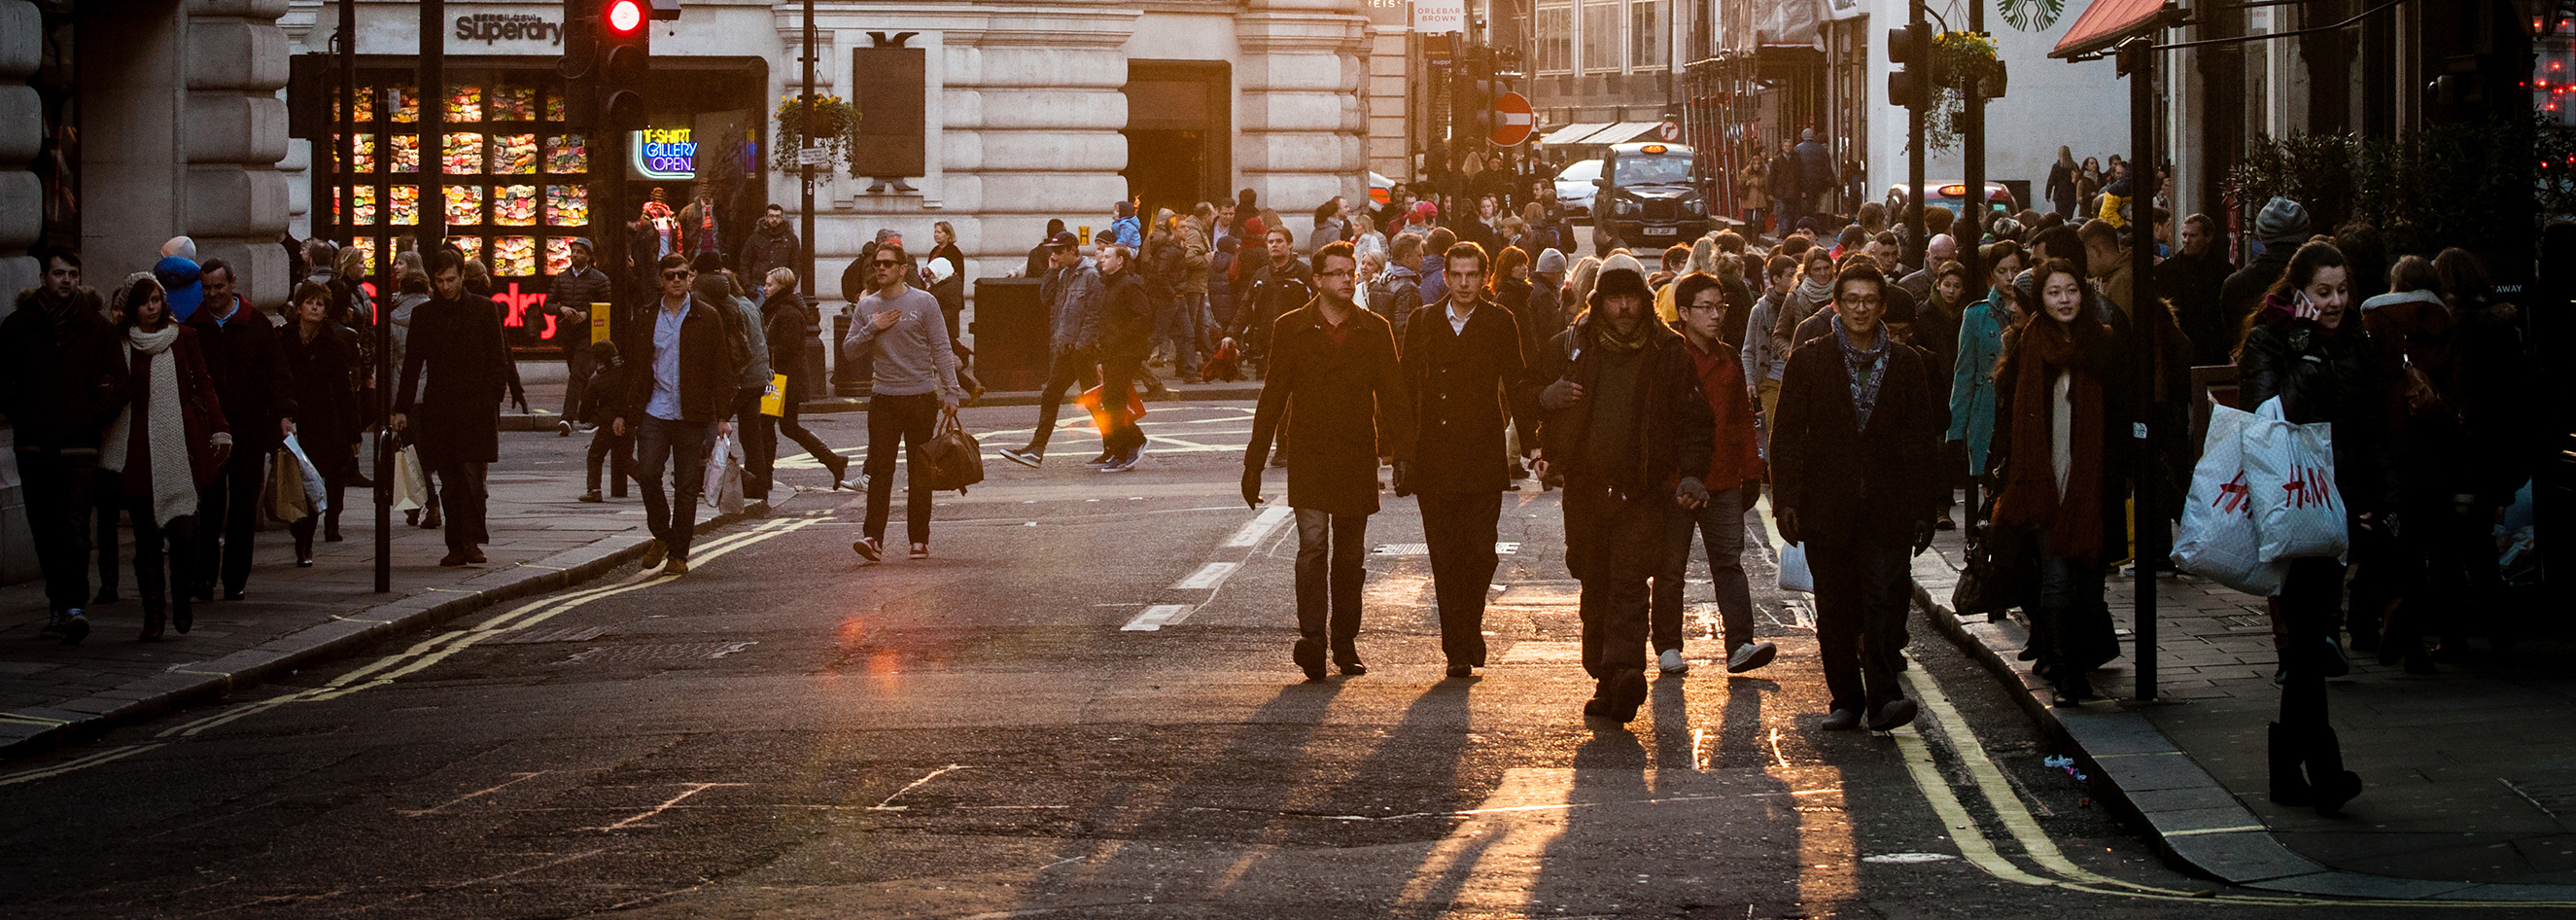 фото людей идущих по улице